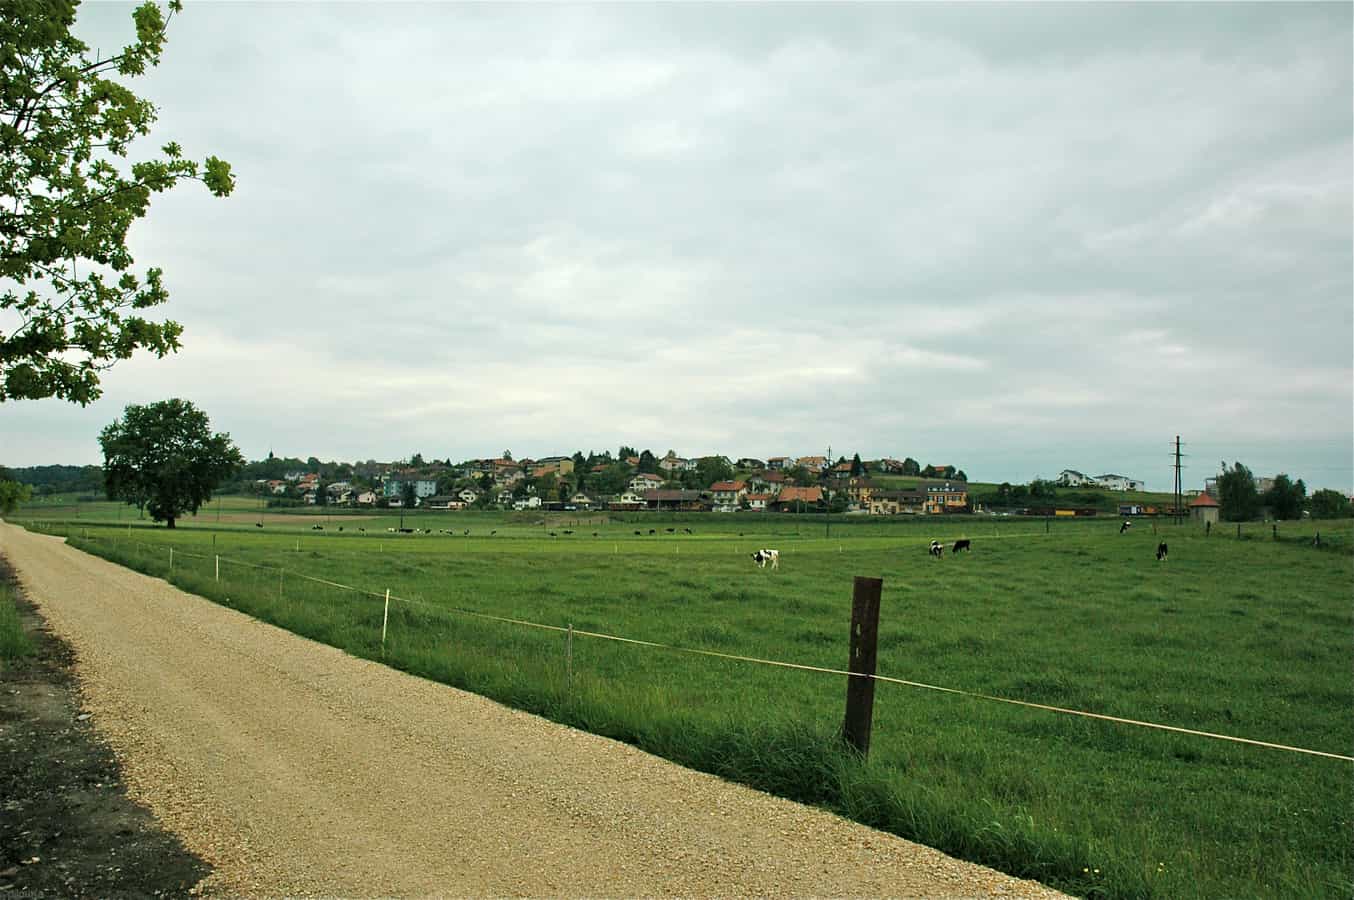 Vista del villaggio di "CRESSIER" o "CRESSIER sur MORAT" Cantone di Friburgo SVIZZERA